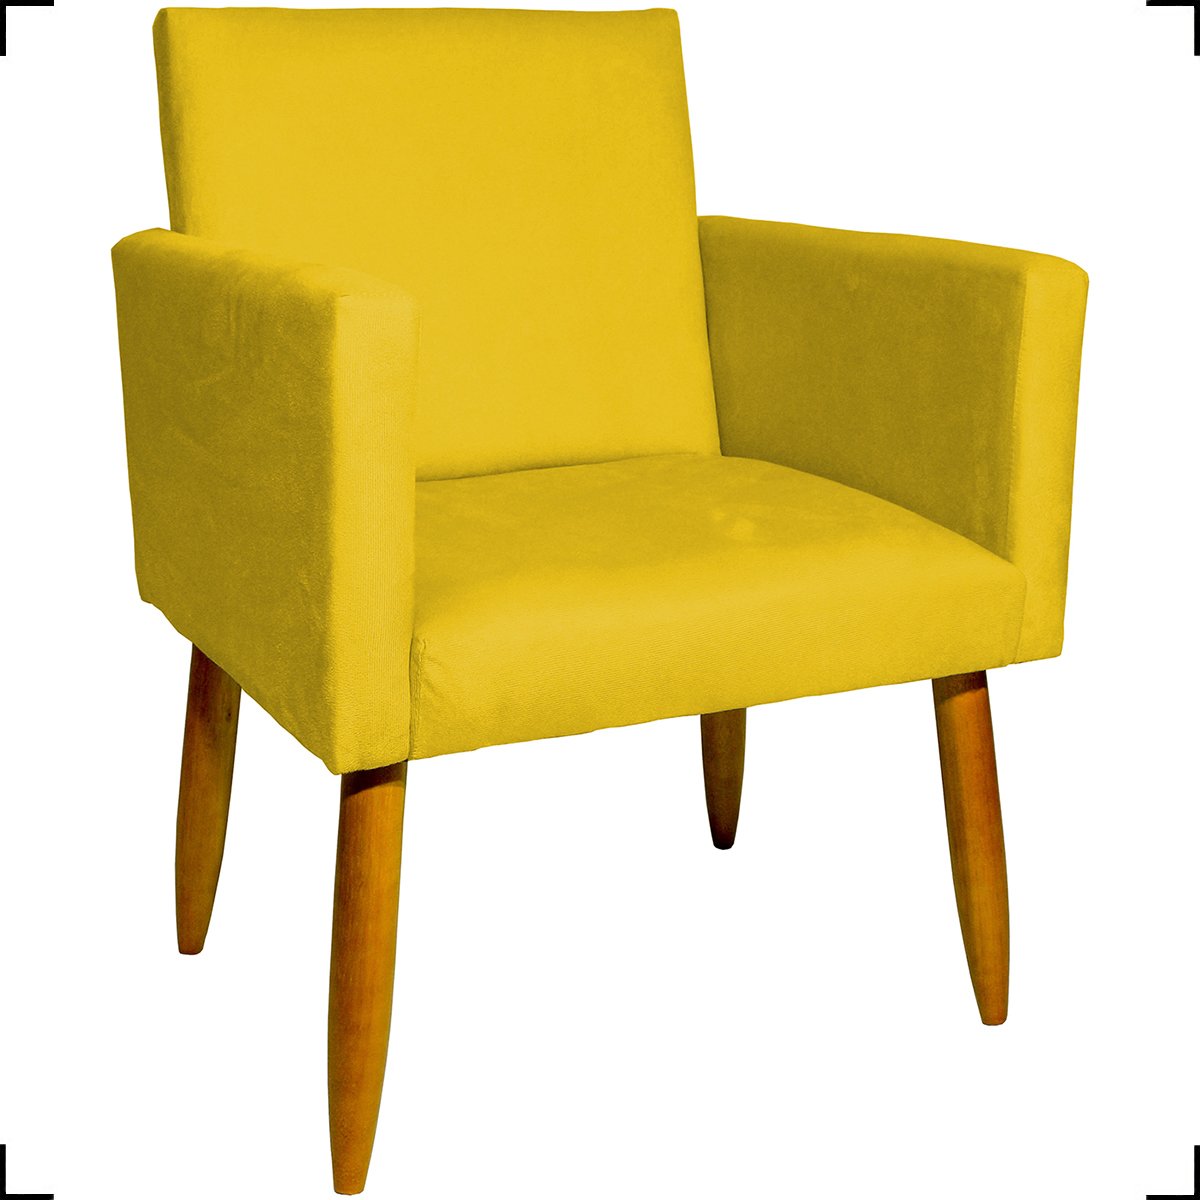 Kit 03 Poltronas Decorativas Para Sala Cadeiras Reforçadas Para Sala De Espera Suede Amarelo - 2